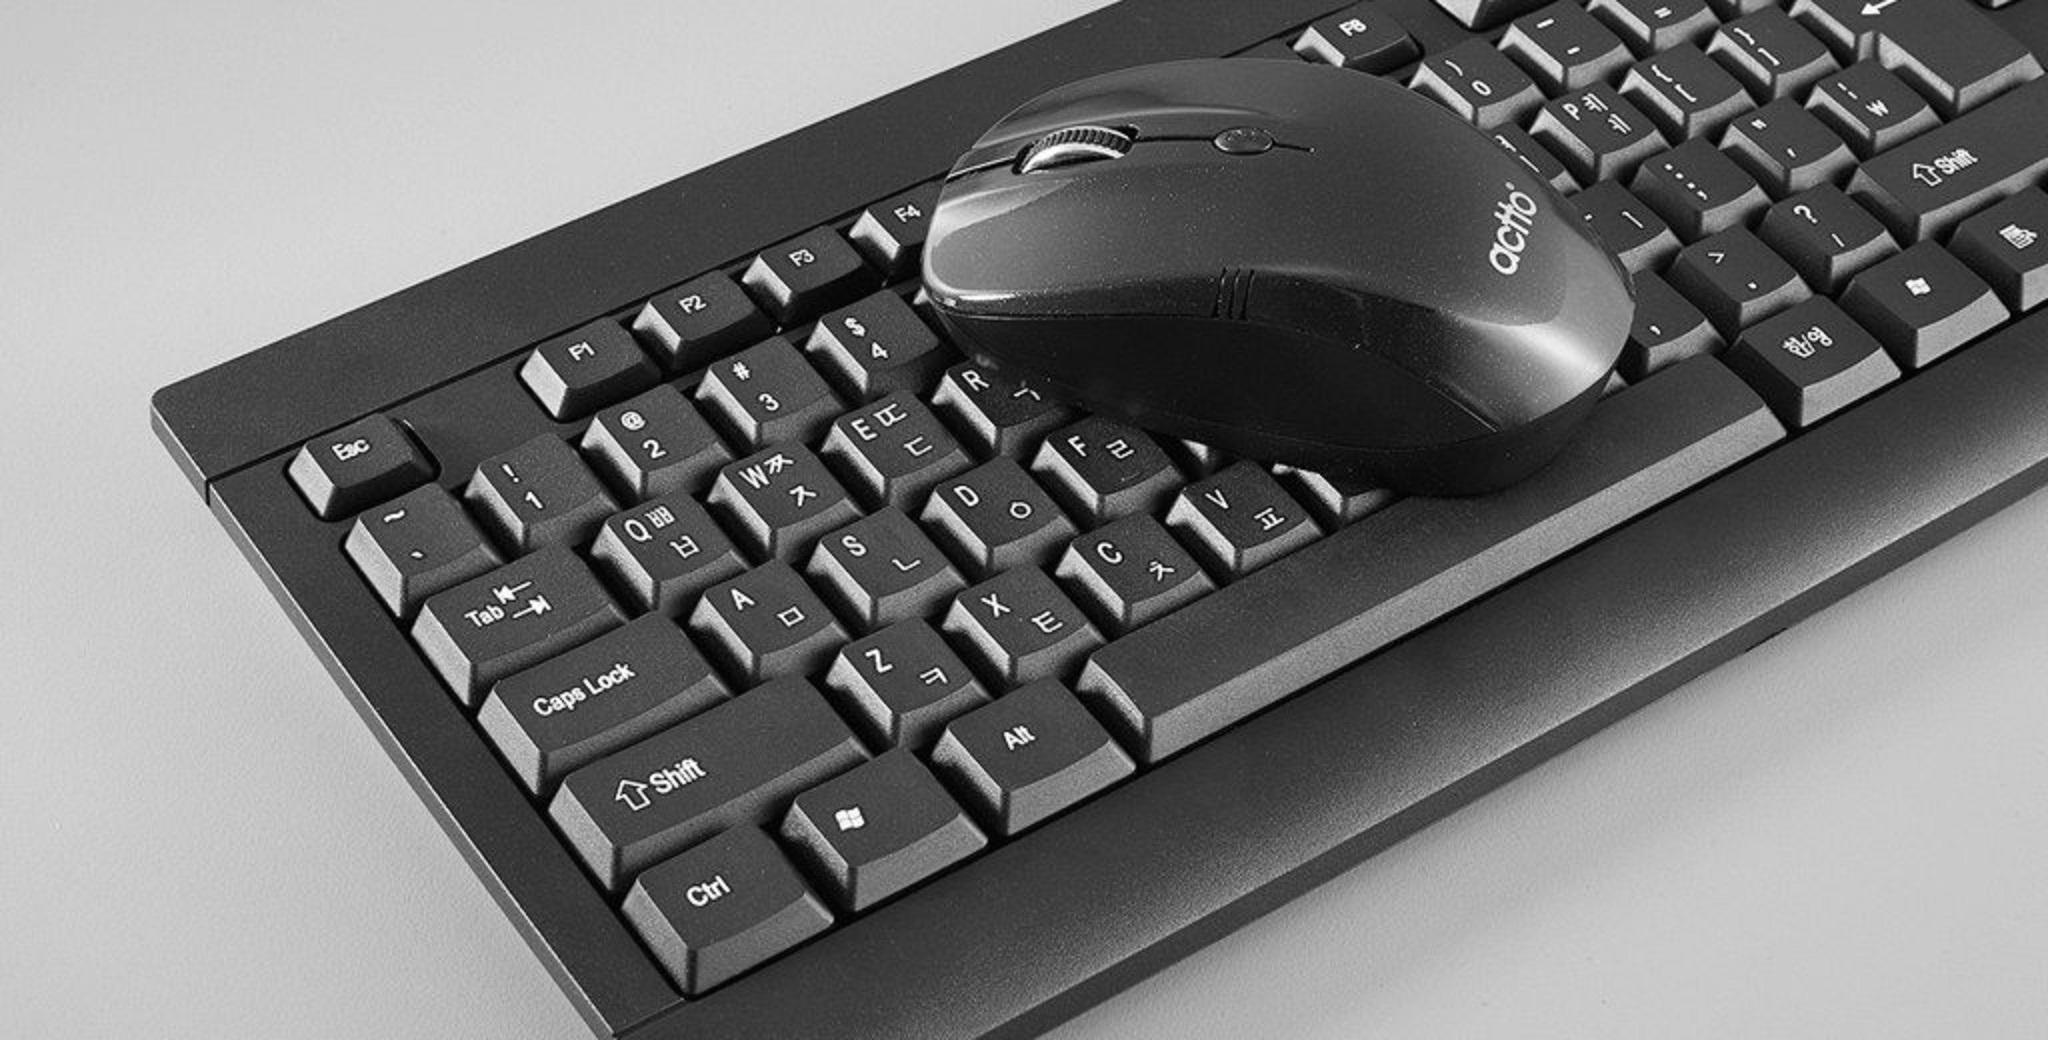 Combo bàn phím chuột không dây khoảng cách kết nối 8m - Mate Wireless Keyboard + Mouse Combo Actto KMC-05 Hàng Chính Hãng - Black